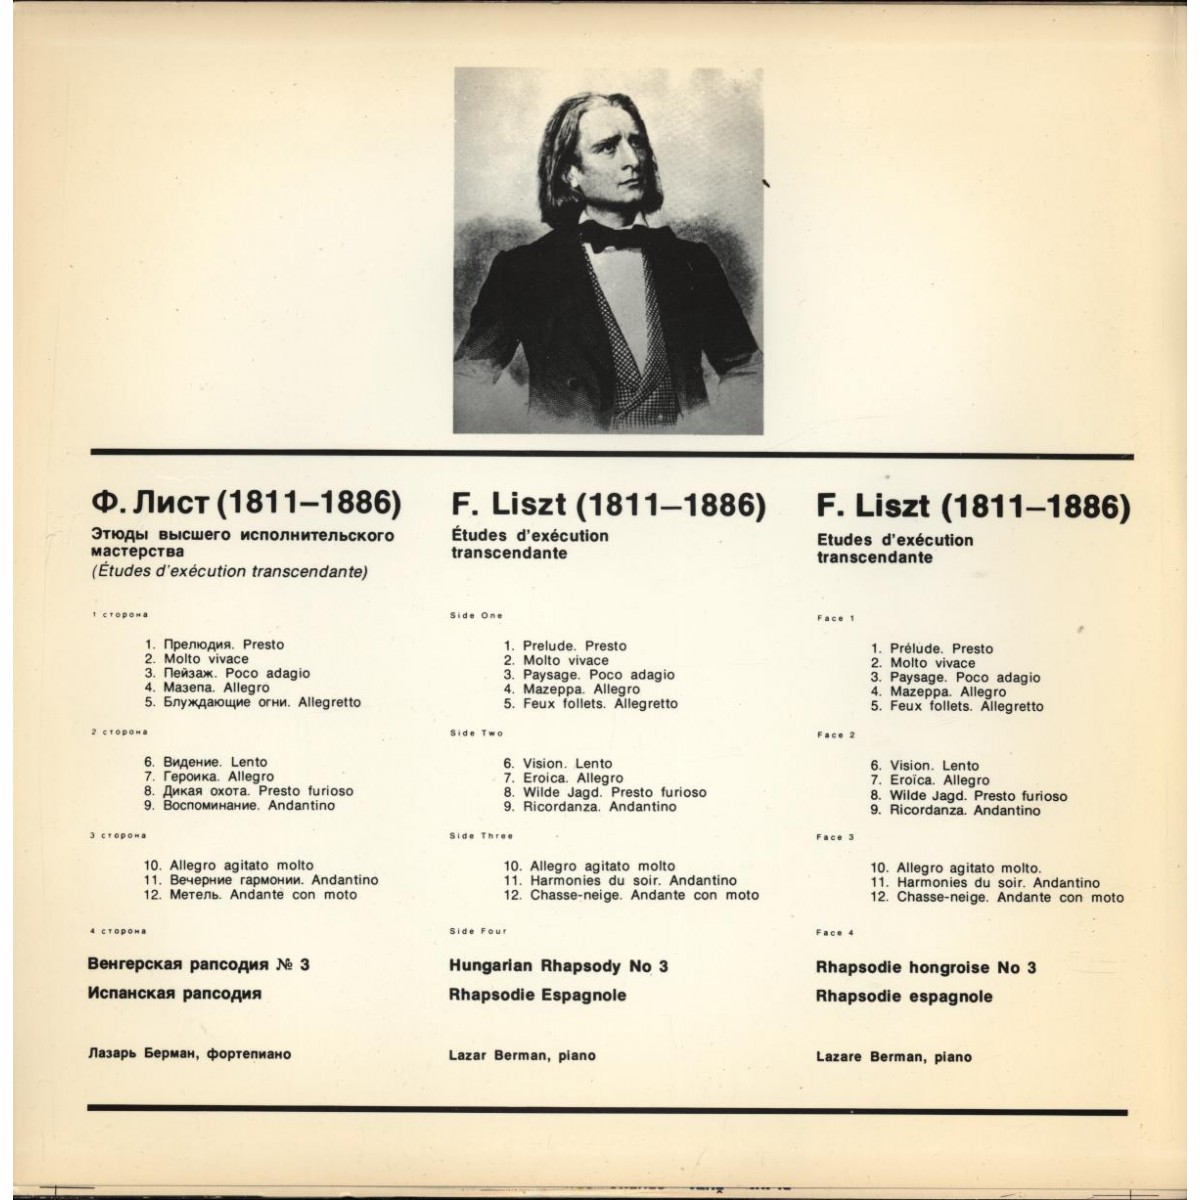 Ф. ЛИСТ (1811-1886) - Этюды высшего исполнительного мастерства.. Играет Л. Берман (ф-но)